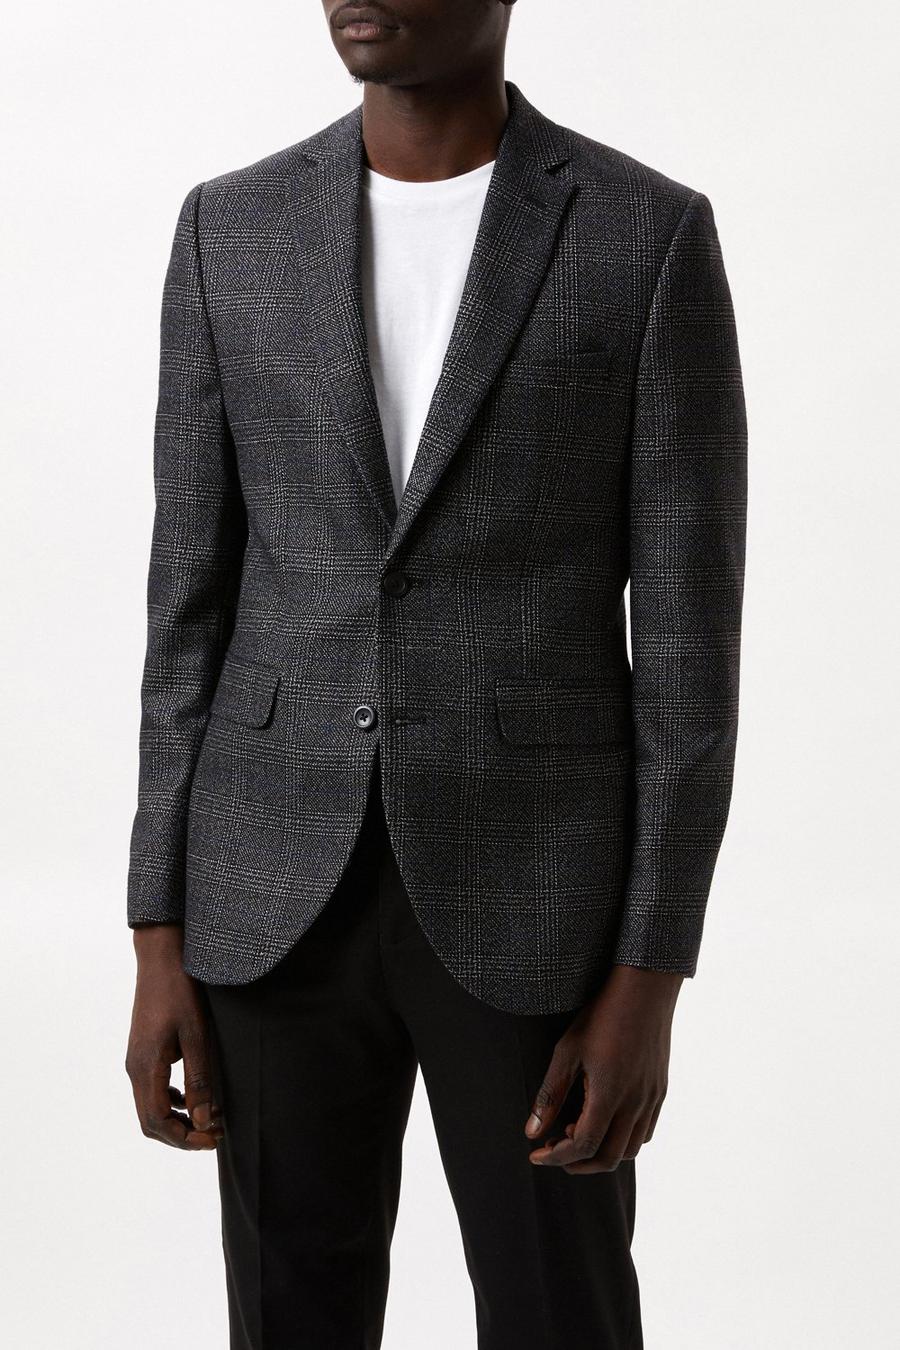 Men's Blazers | Formal, Casual & Tweed Blazers | Burton